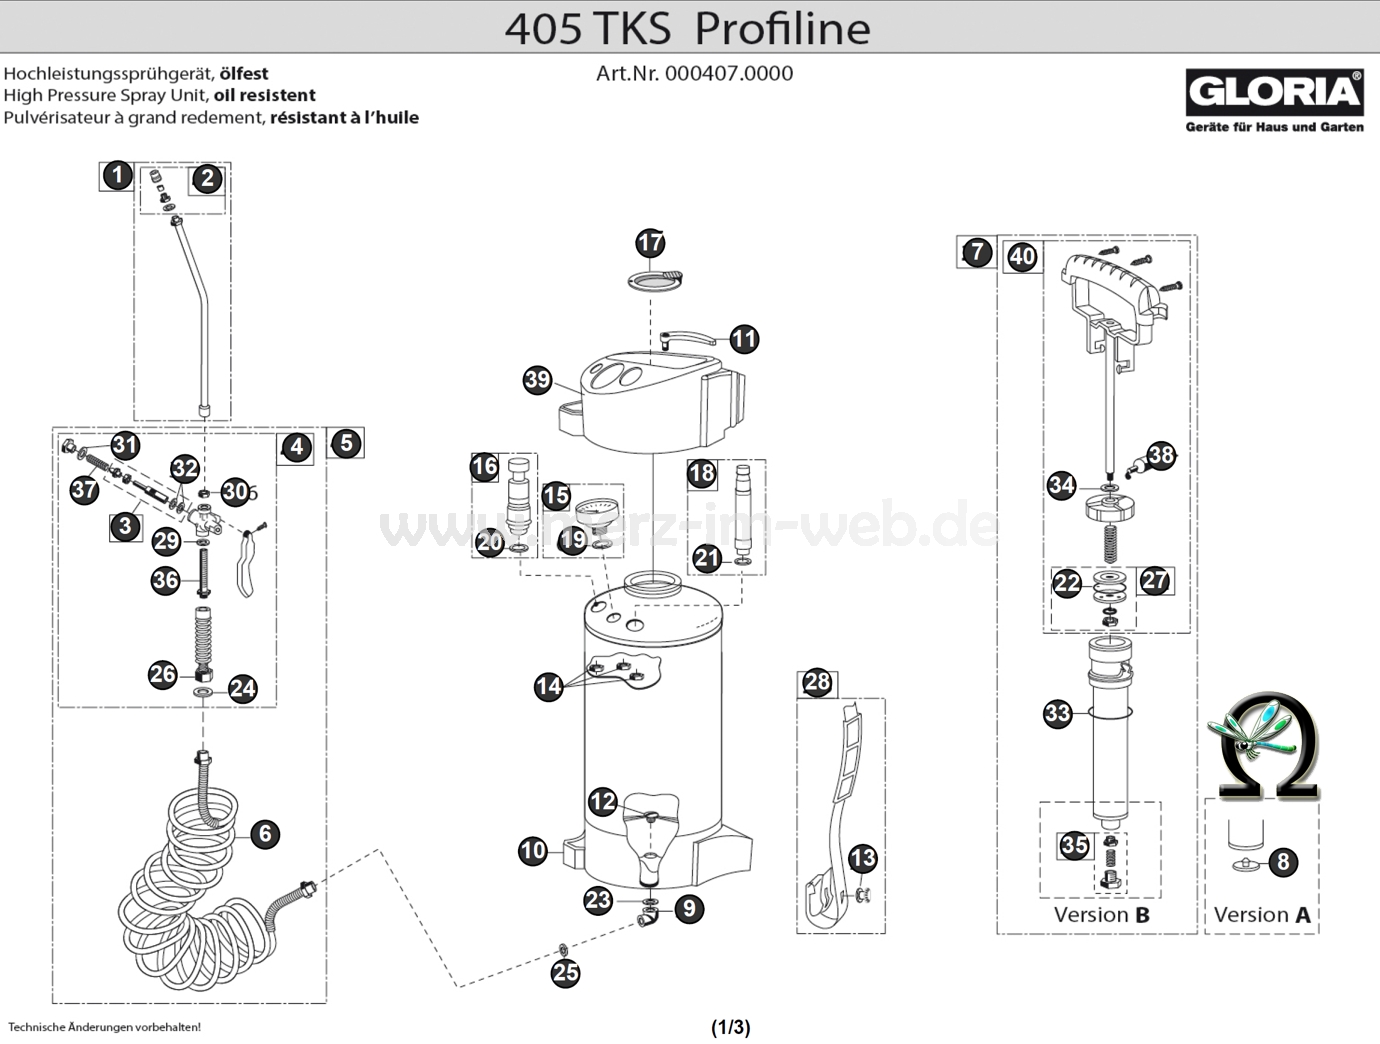 Hochleistungssprühgerät Gloria 405 TKS Profiline Zeichnung der Einzelteile